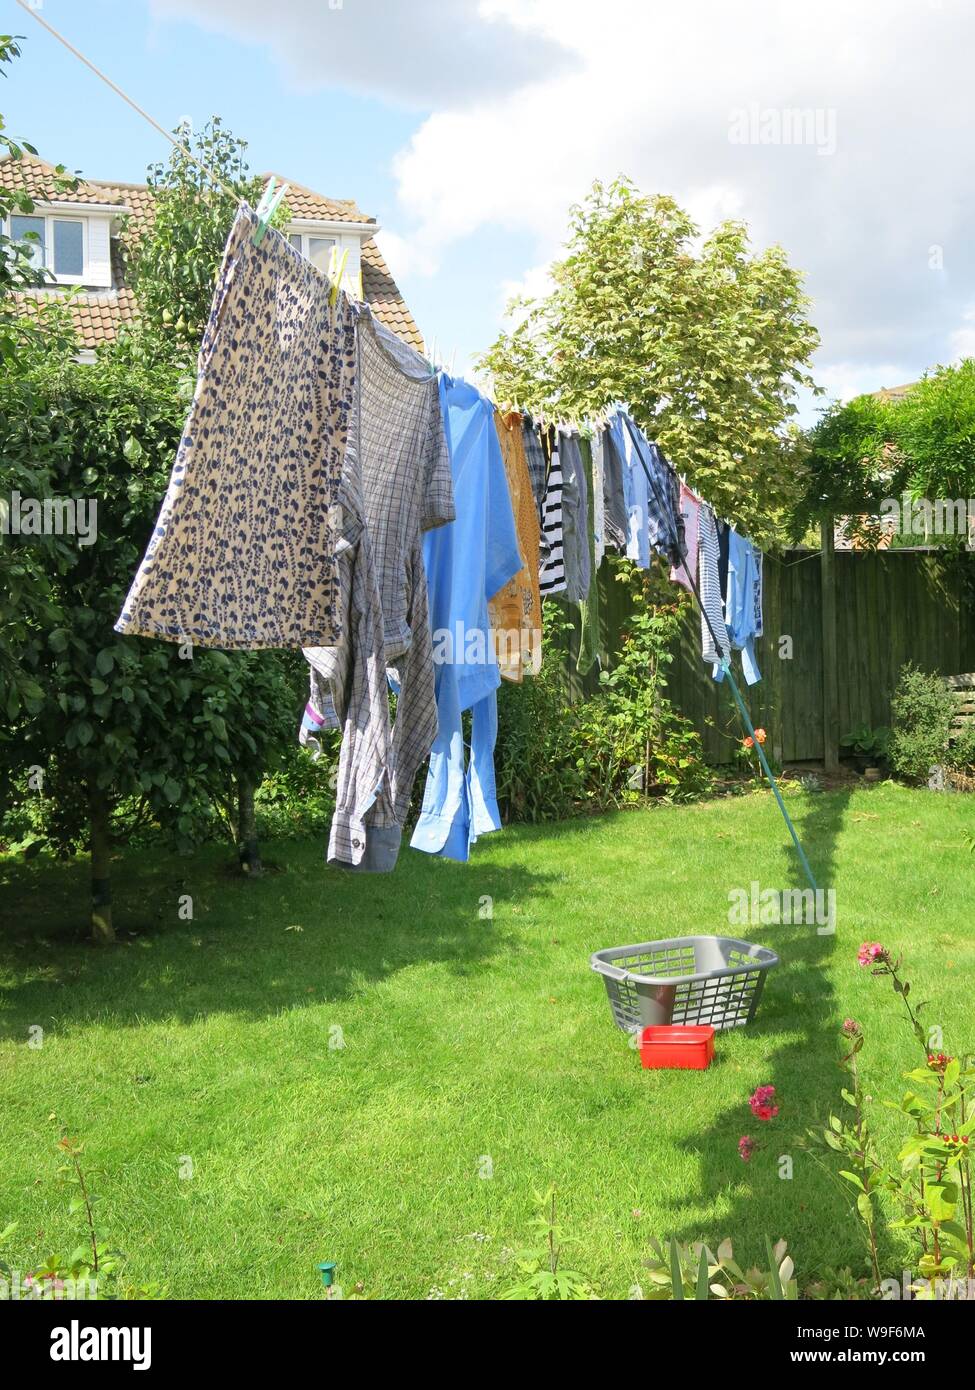 Una línea de lavado de ropa tendida con en un tendedero para secar en un jardín inglés Fotografía de - Alamy